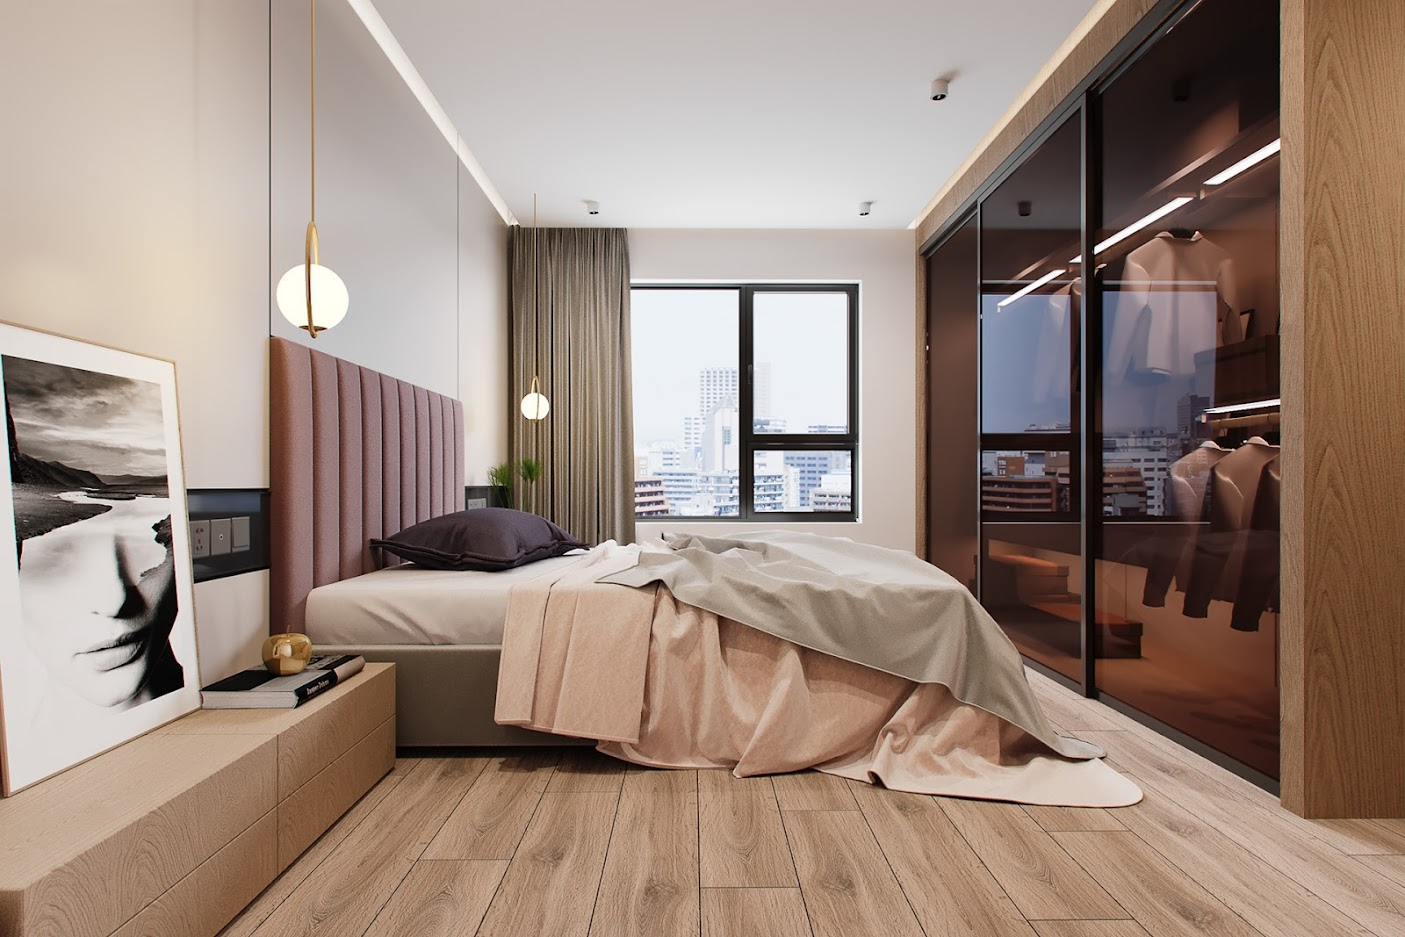 Hình ảnh phòng ngủ chung cư phong cách hiện đại